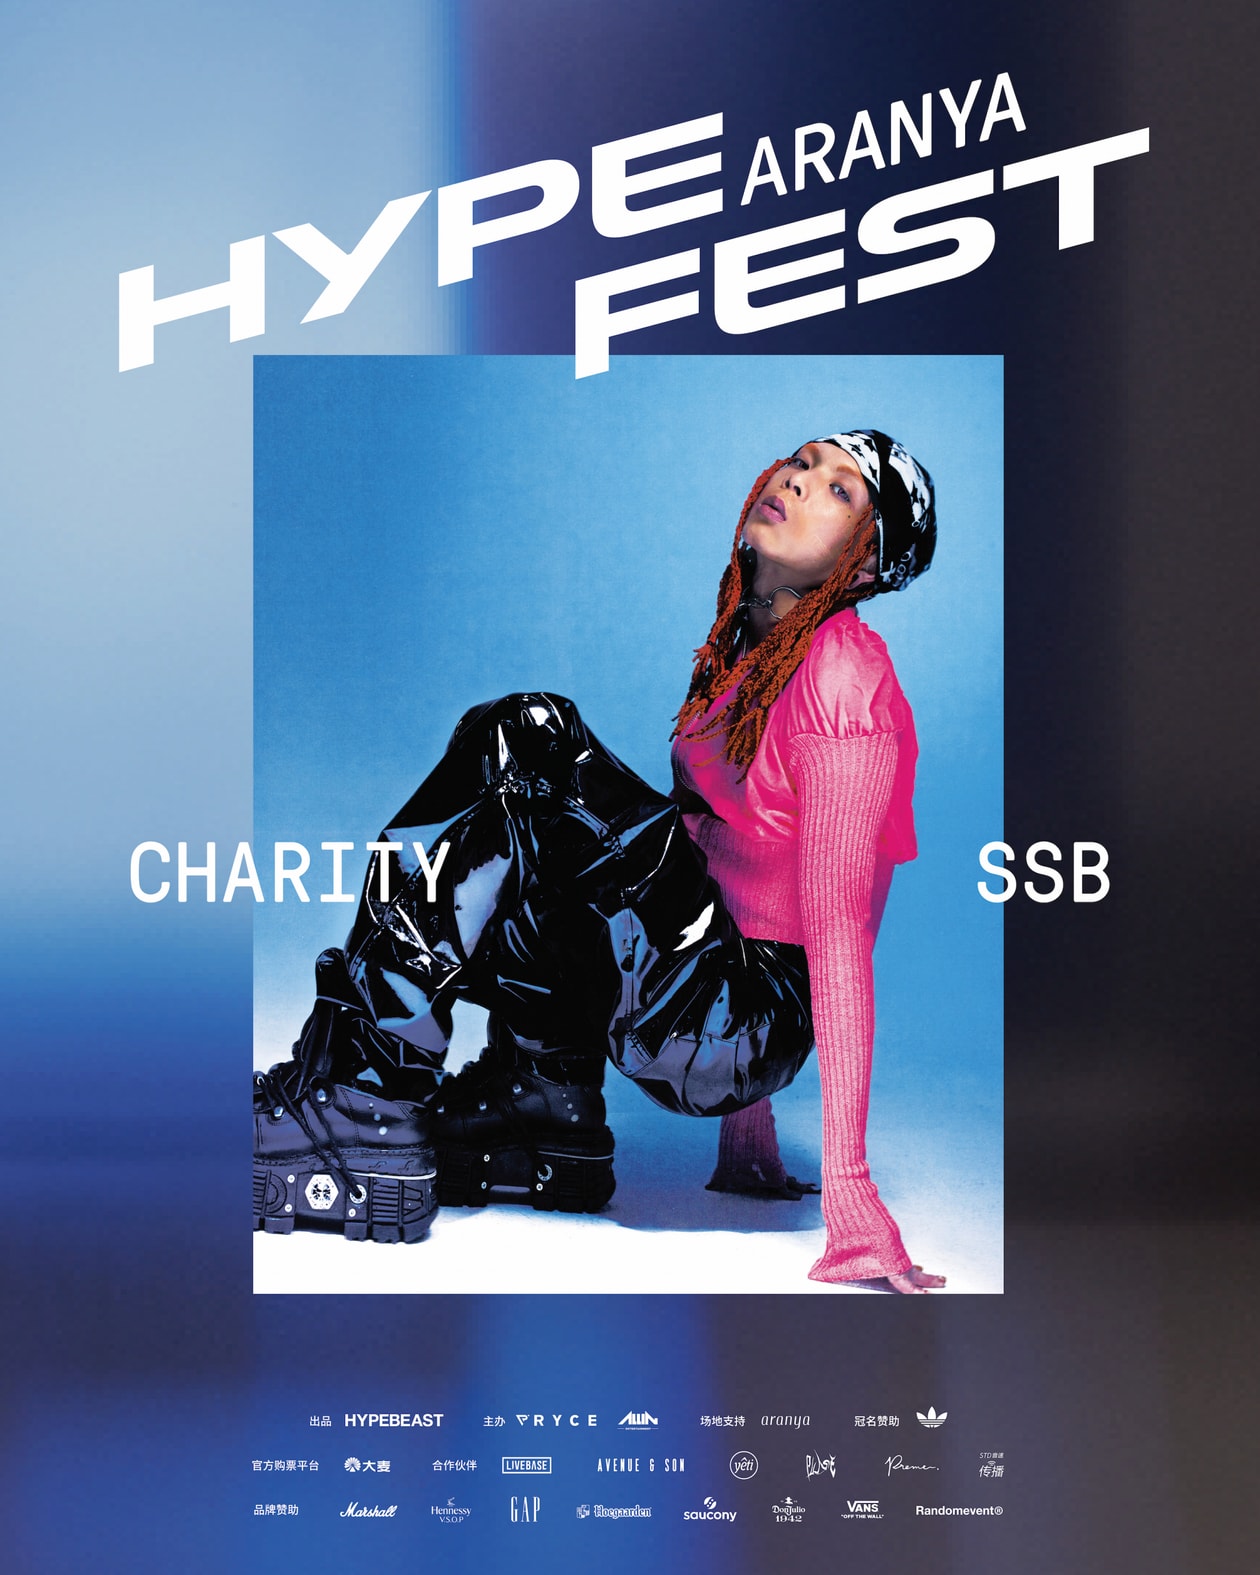  首次进入中国！Hypefest 文化盛会将于 9 月 23、24 日登陆阿那亚 